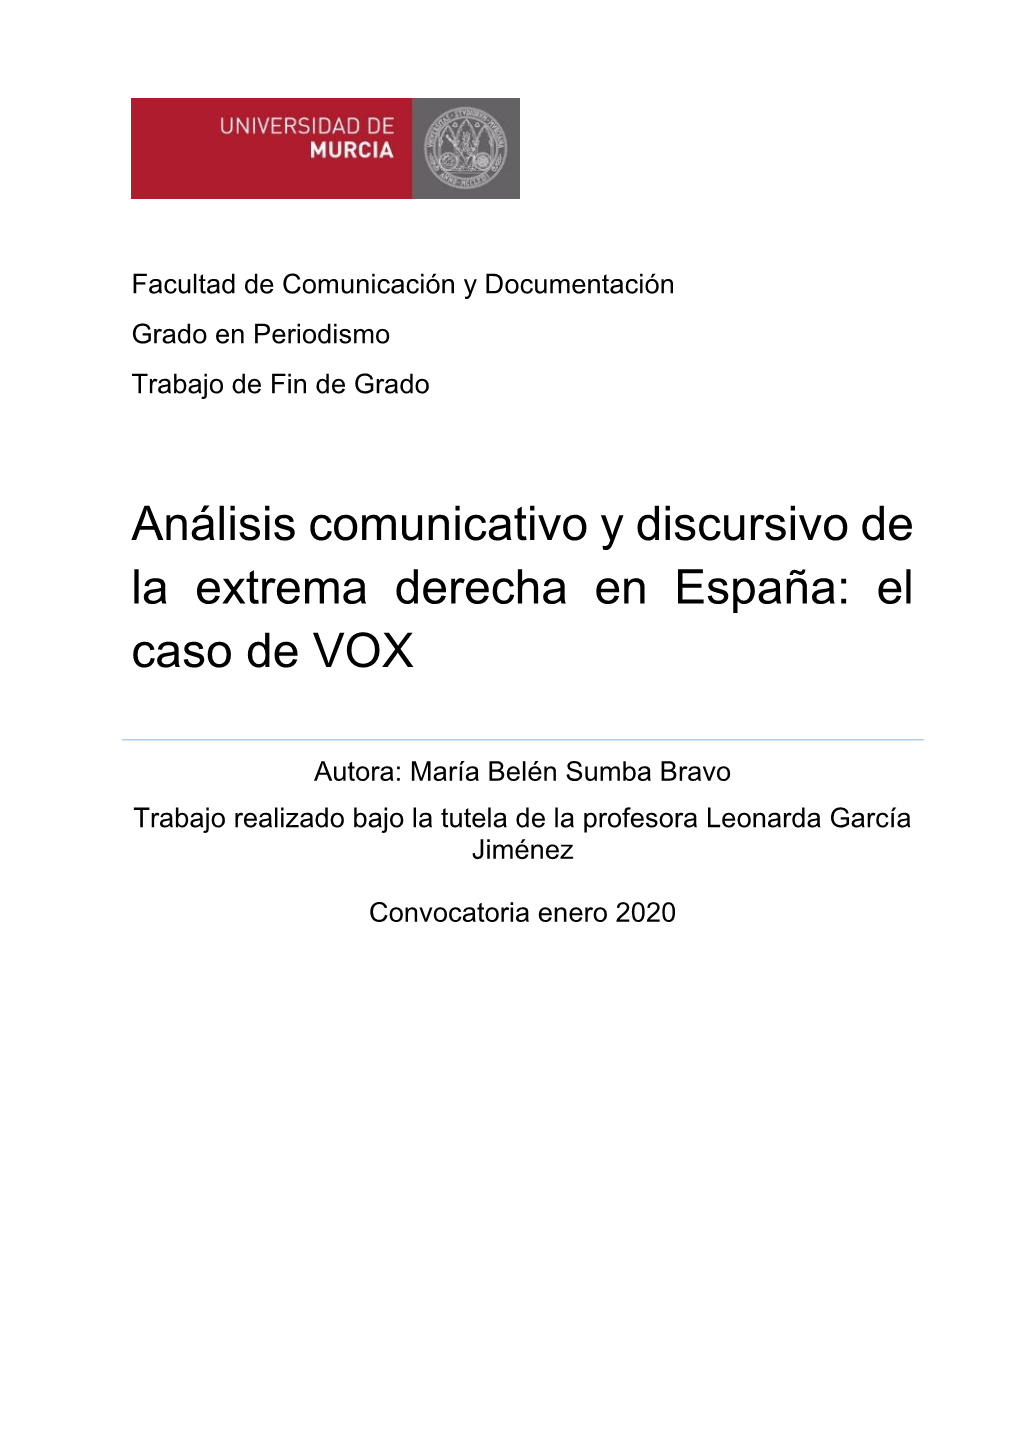 Análisis Comunicativo Y Discursivo De La Extrema Derecha En España: El Caso De VOX